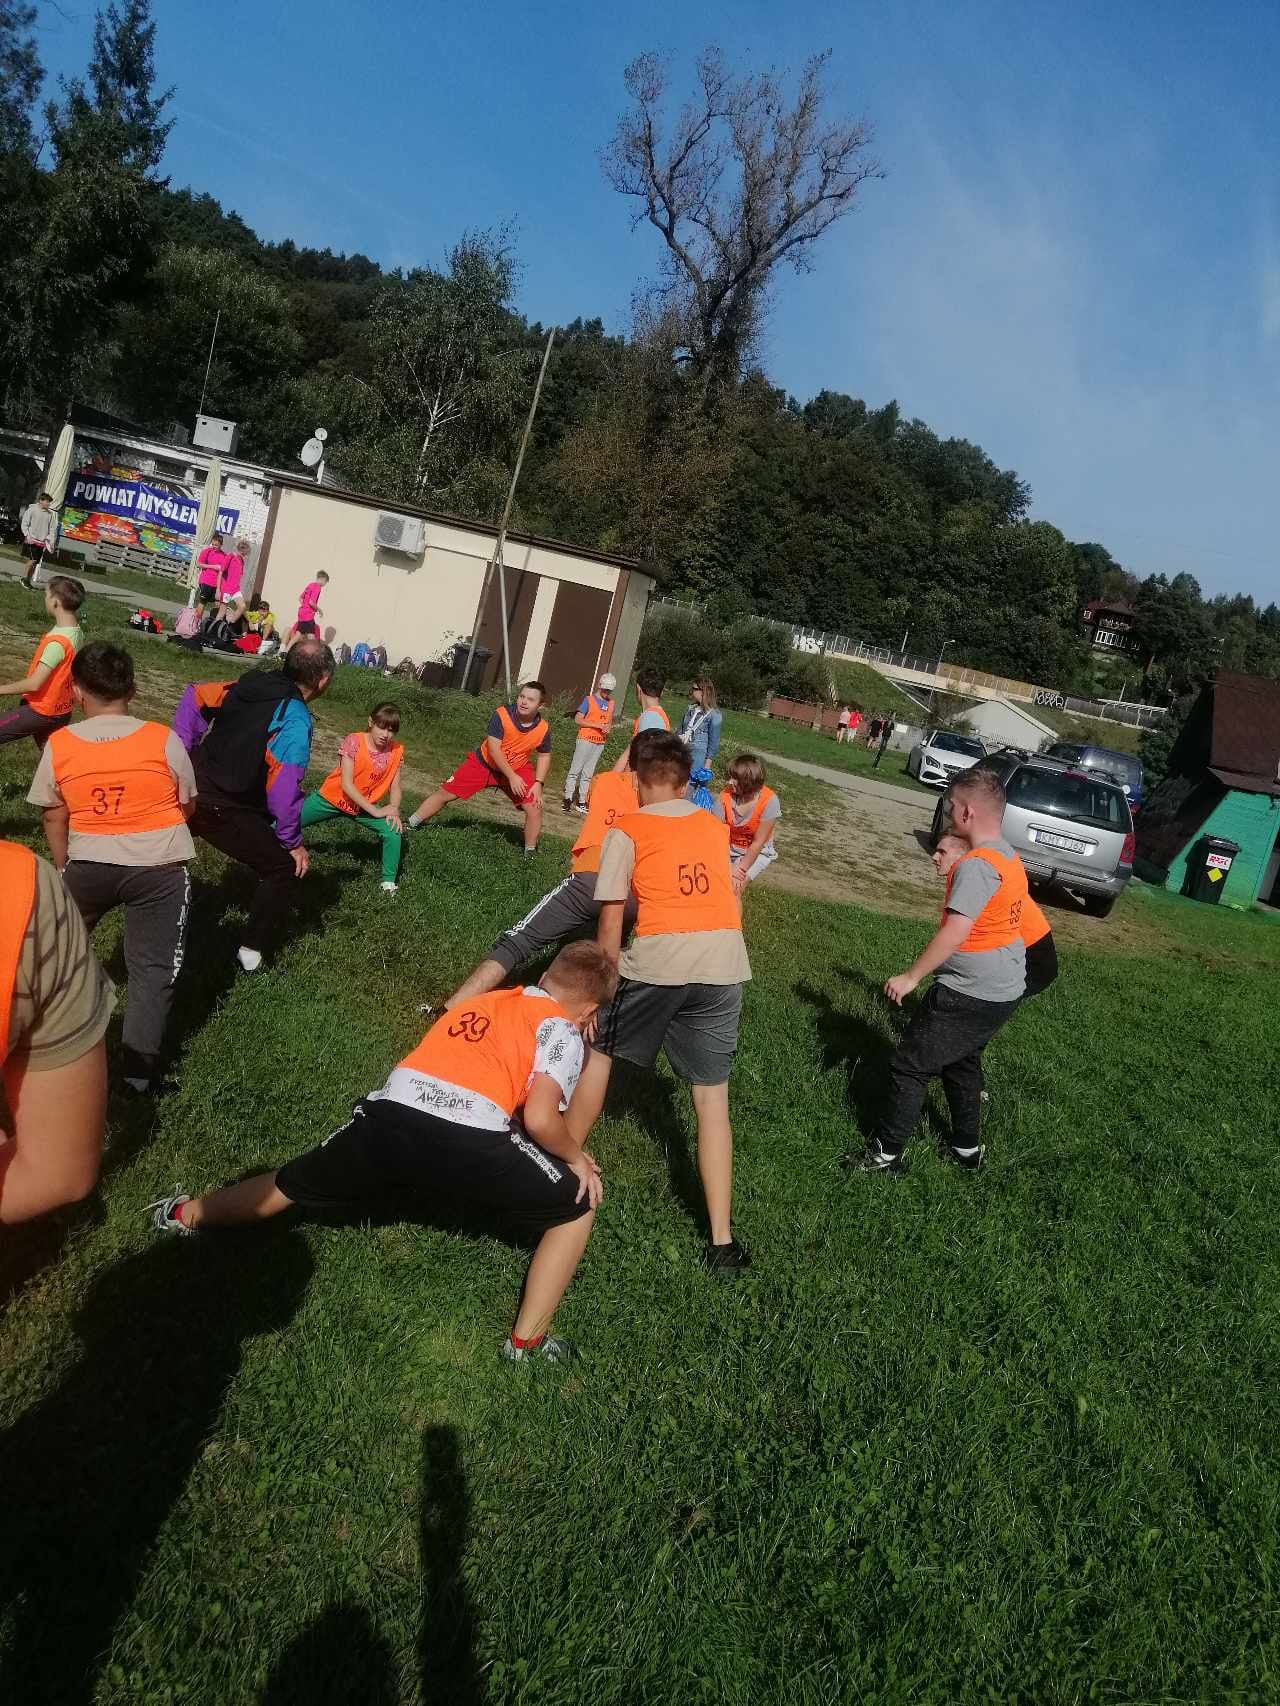 Na zdjęciu są uczniowie ubrani w pomarańczowe koszulki. Uczniowie wraz z nauczycielem wykonują rozgrzewkę na trawniku.